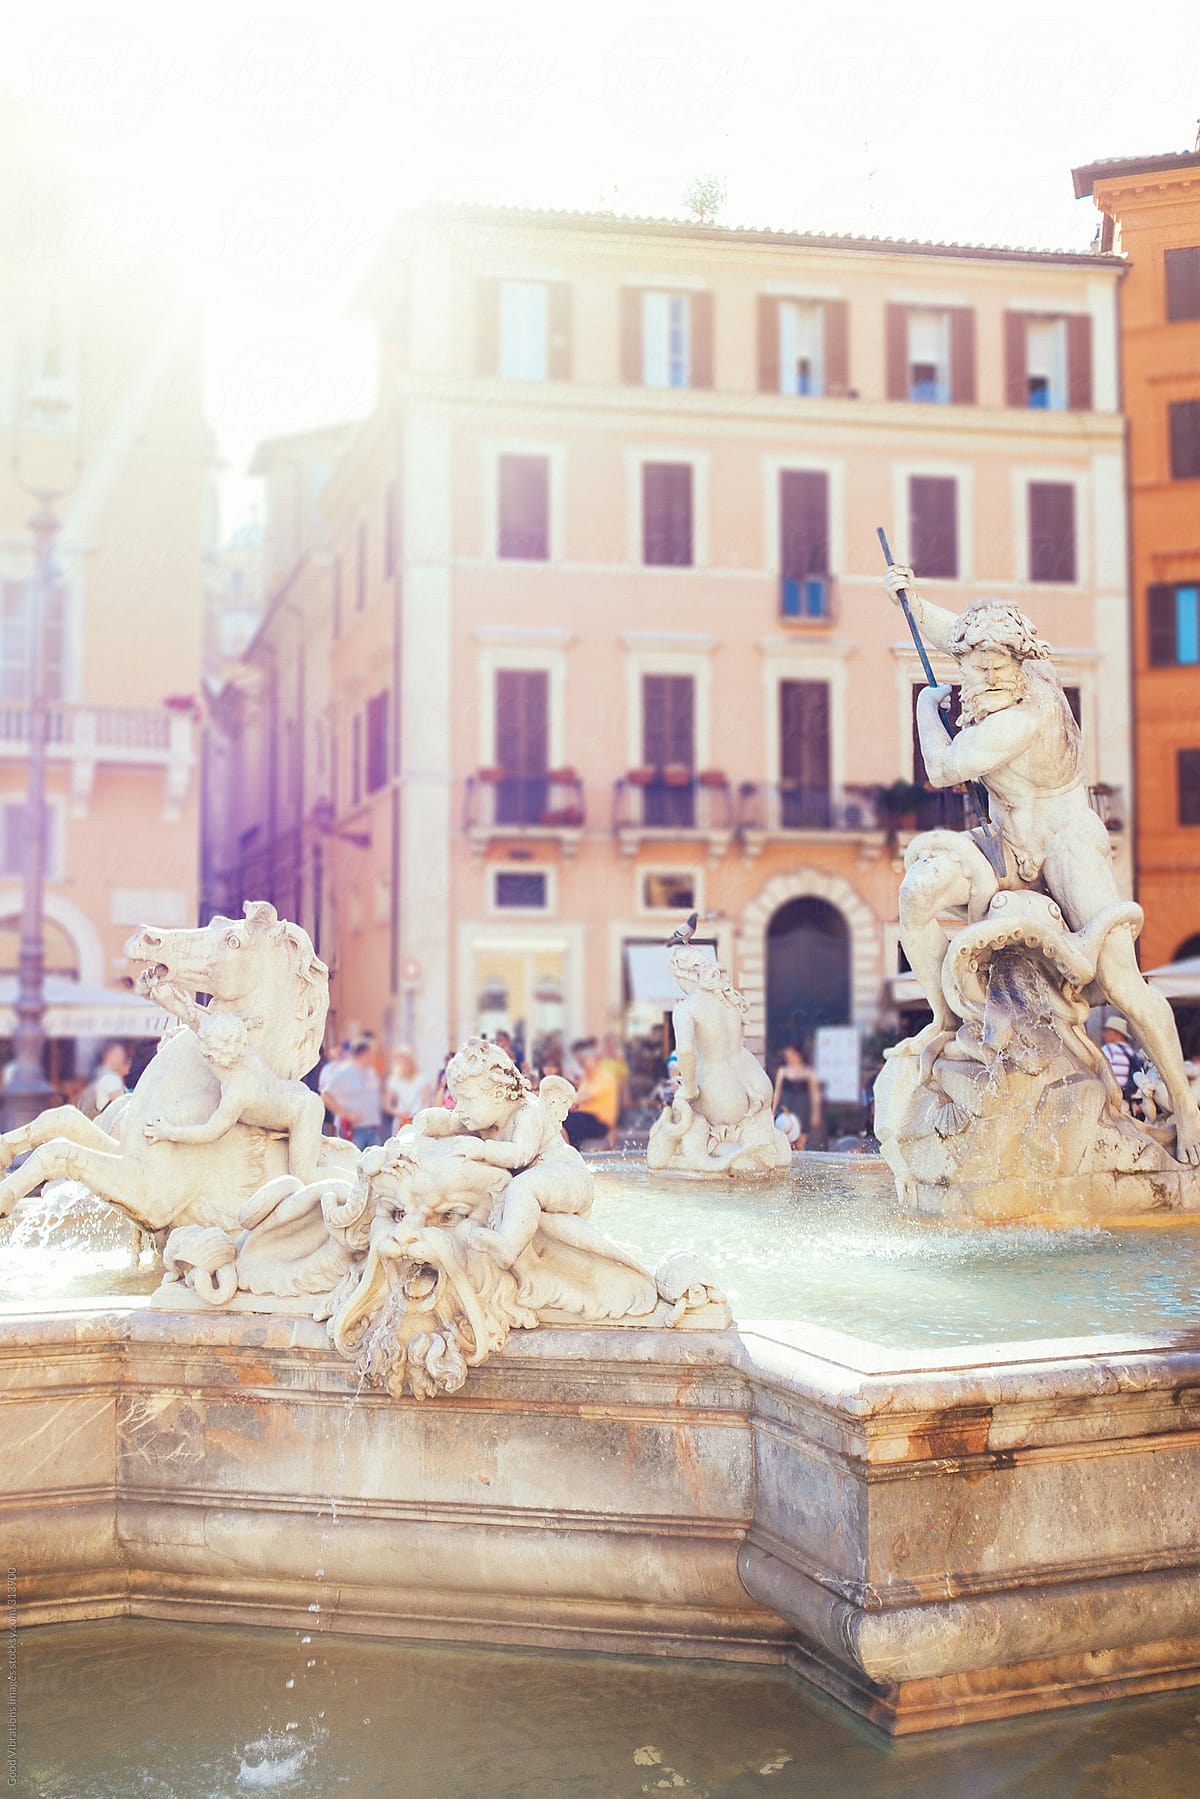 Fountain in Rome